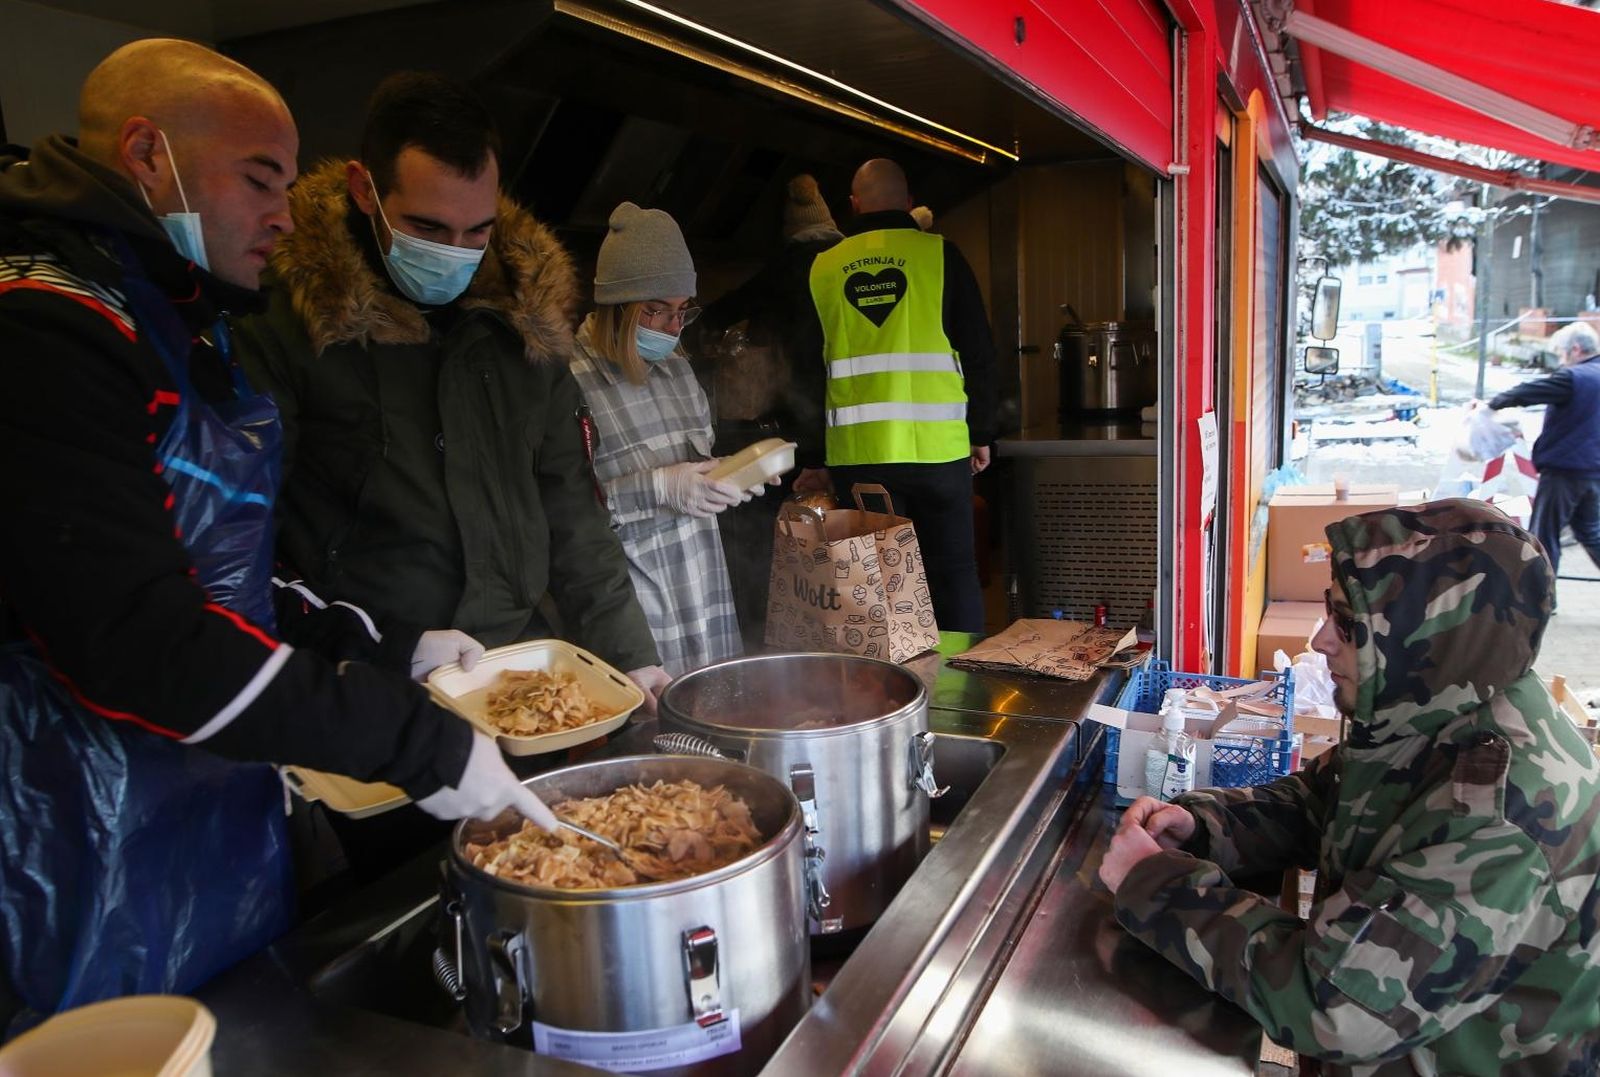 13.01.2021., Petrinja - Kuharima volonterima danas je zadnji dan kako kuhaju hranu za stradale u potresu. Uz hranu koju kuhaju, volonteri dijele i hranu koju je skuhala drzavna tvrtka Pleter. Photo: Zeljko Lukunic/PIXSELL